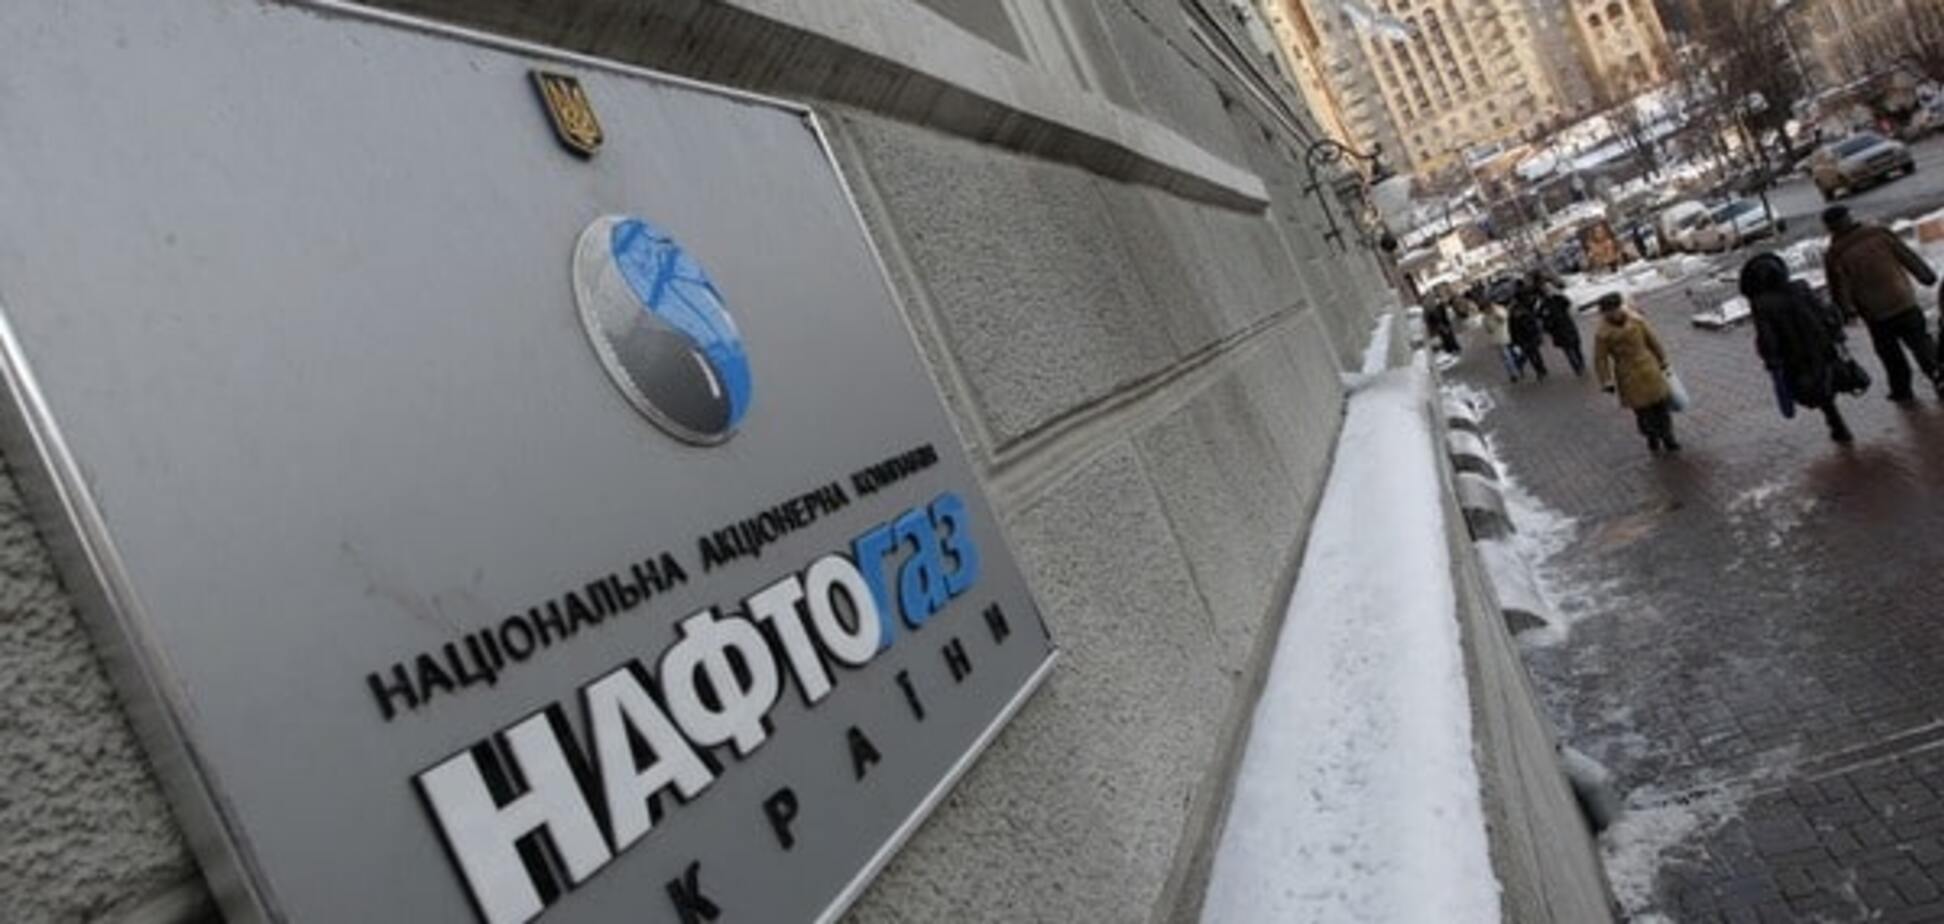 Последнее предупреждение: 'Нафтогаз' уведомил 'Газпром' о споре по активам в Крыму